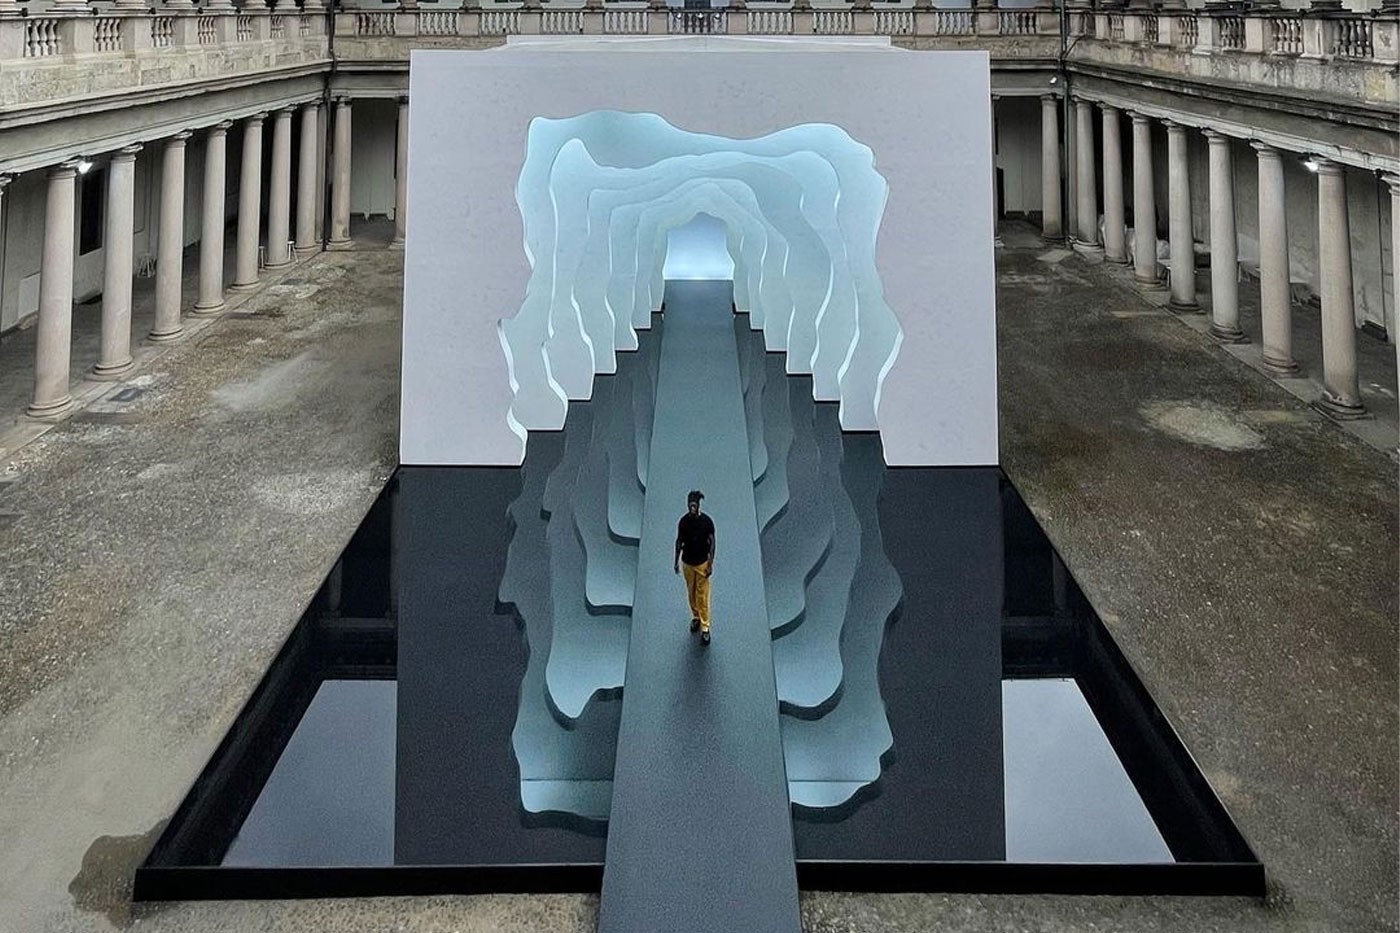 Daniel Arsham × Kohler 体验式装置艺术「Divided Layers」正式亮相